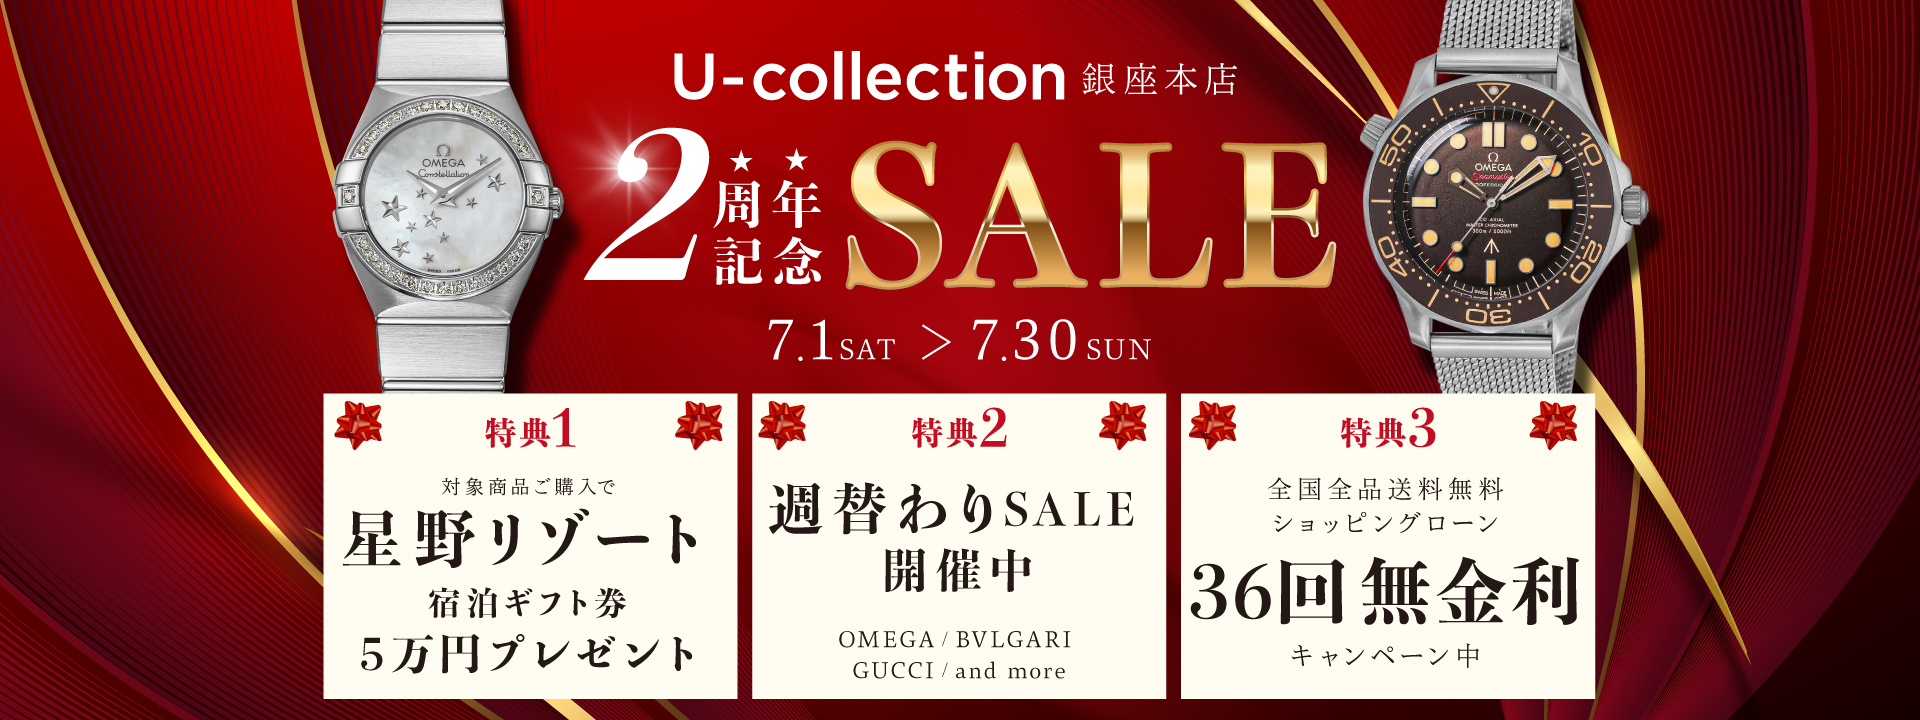 2周年記念SALE | 海外ブランド腕時計通販 U-collection